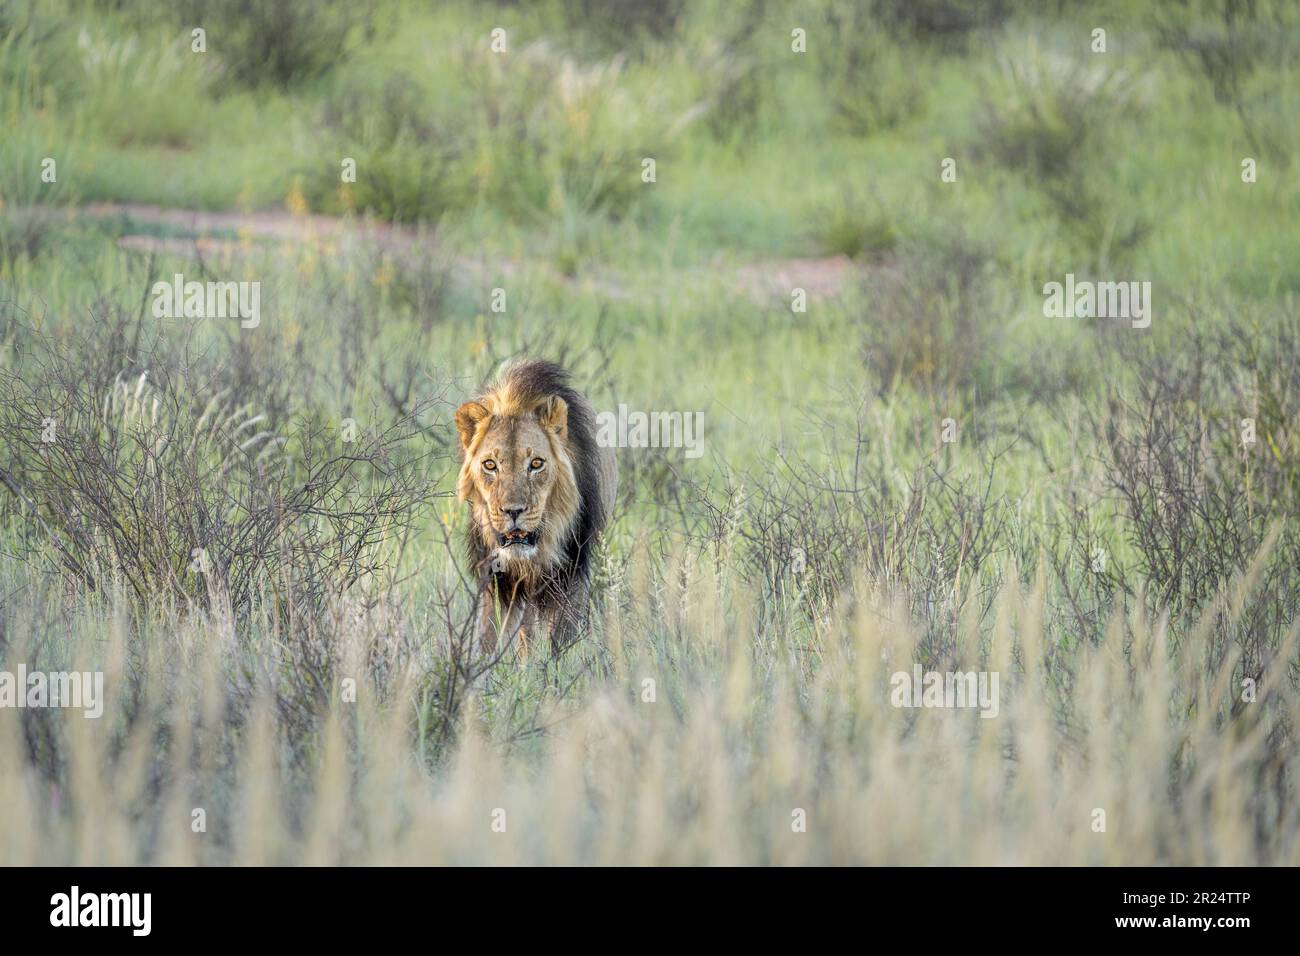 Lion in grass walking, black-maned Kalahari lion. Front view. Kalahari, Kgalagadi Transfrontier Park, South Africa Stock Photo